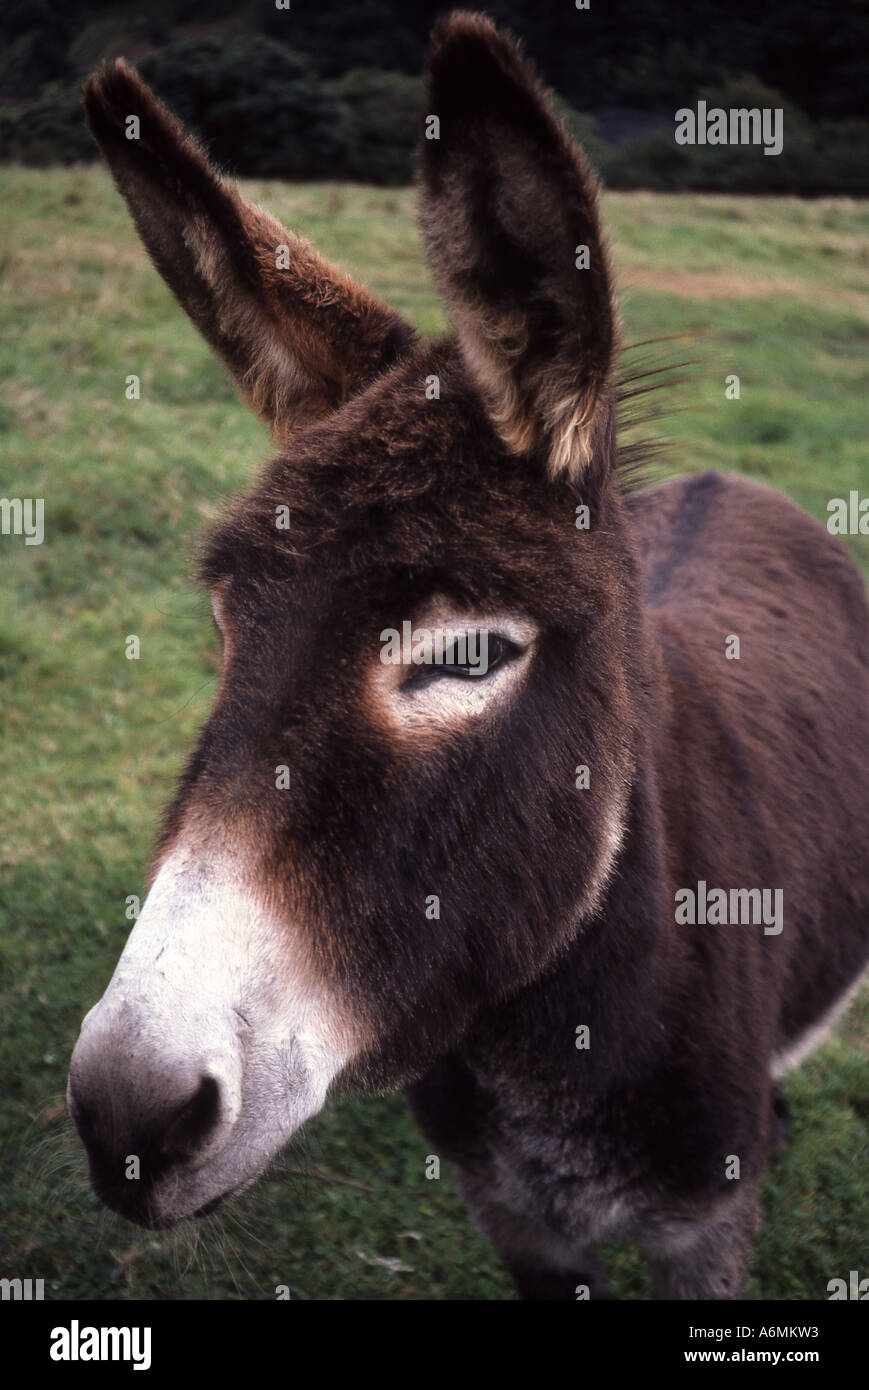 Inquisitive donkey Stock Photo